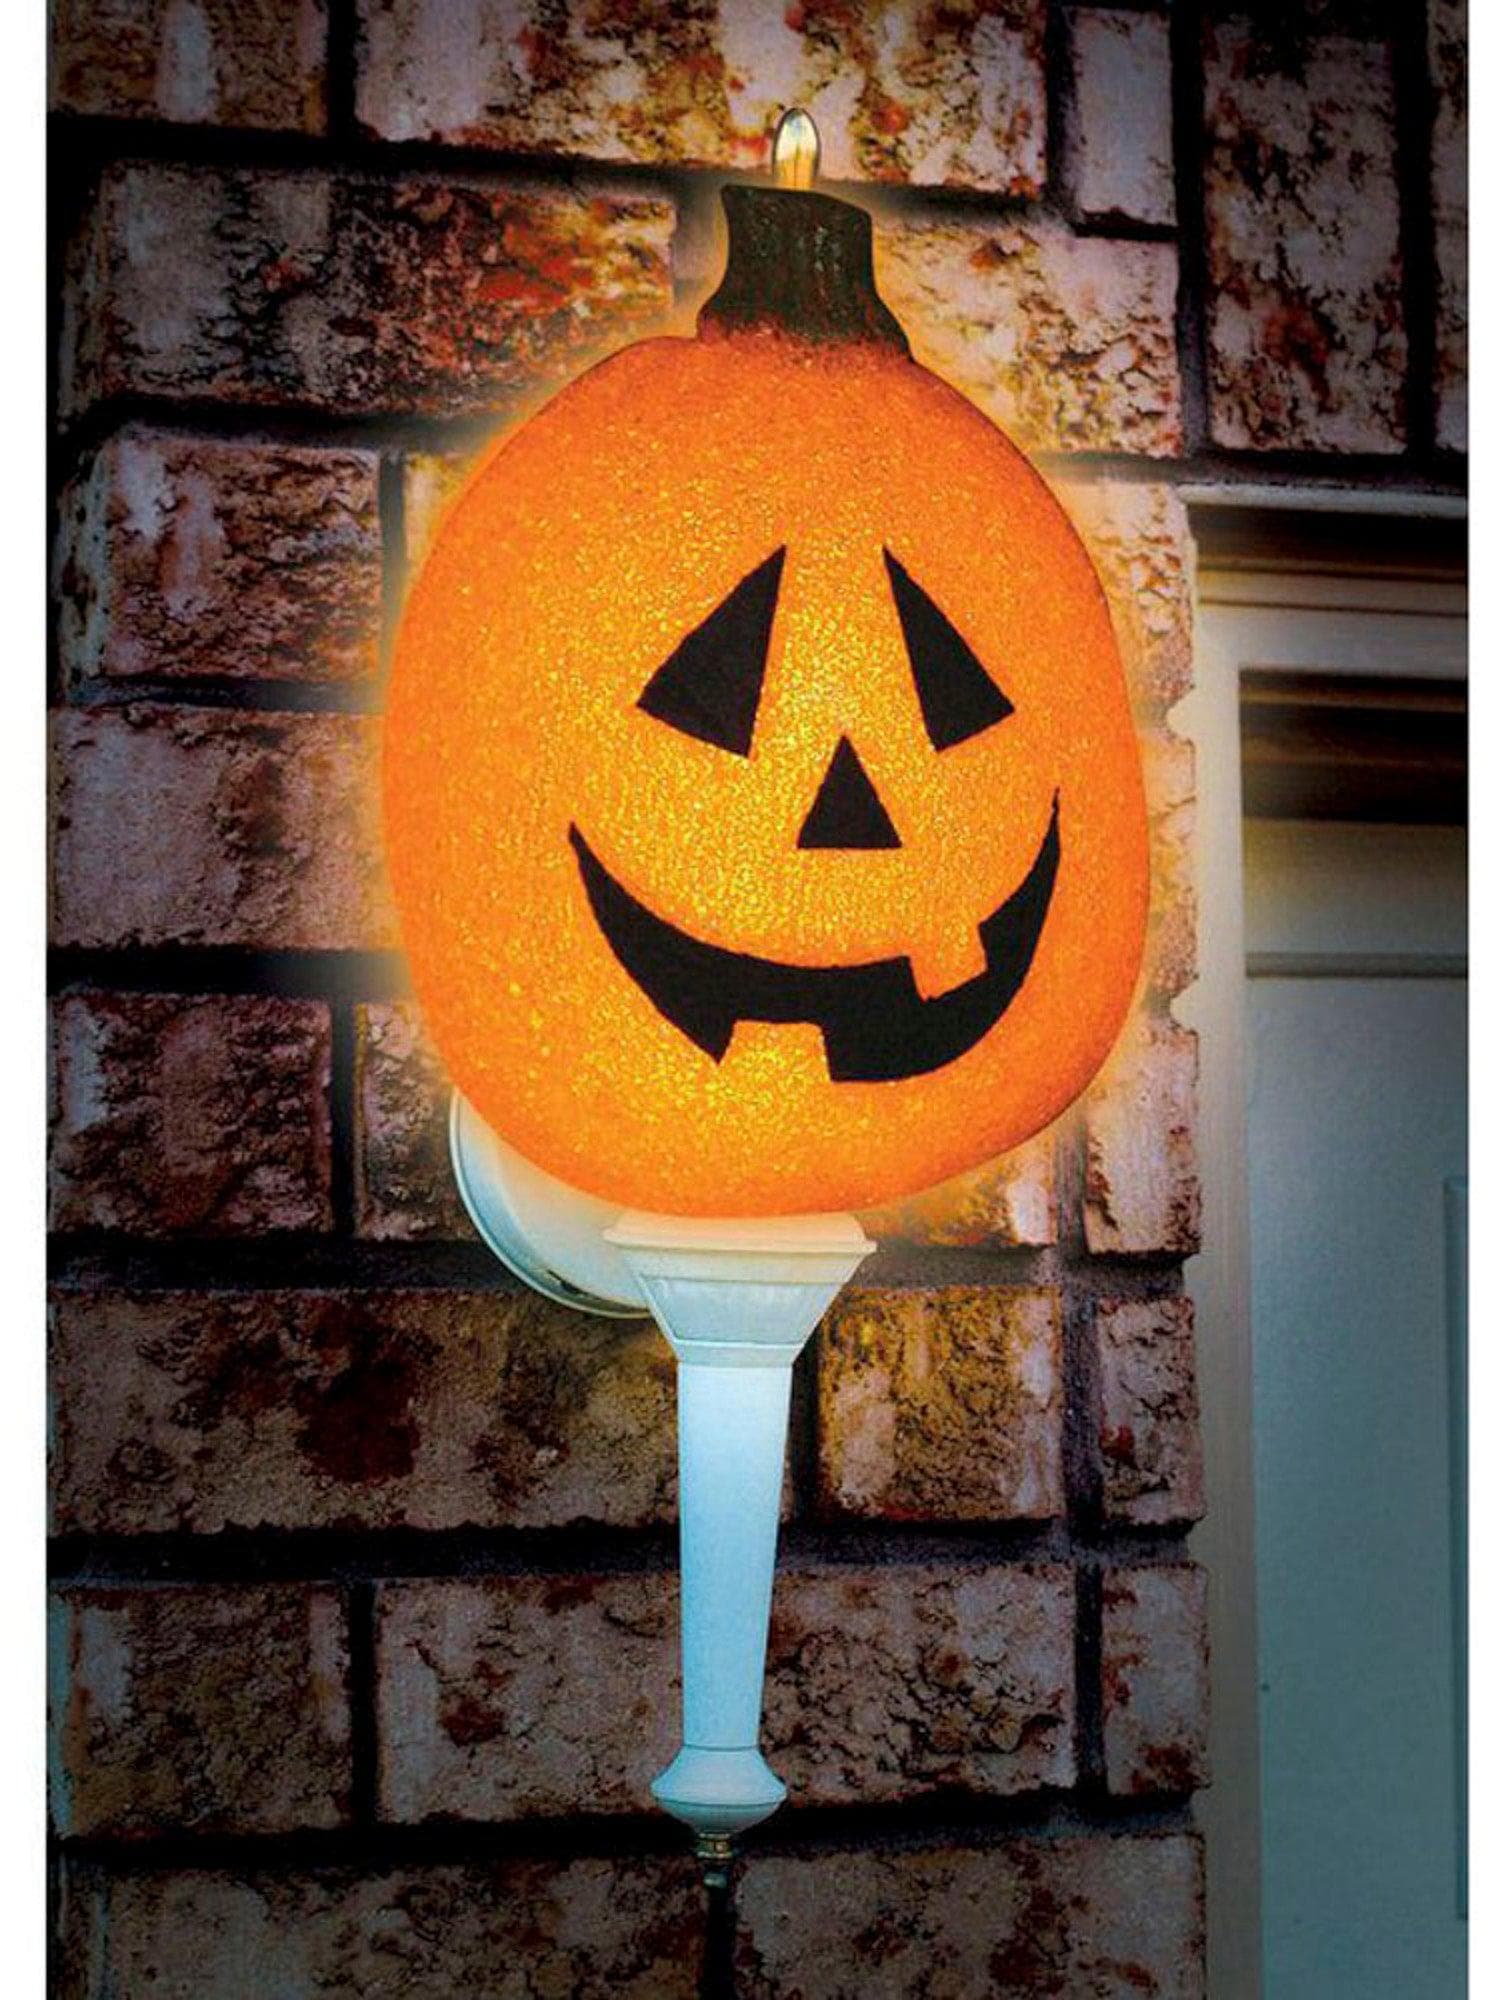 12.25-inch Sparkling Pumpkin Porch Light Cover - costumes.com